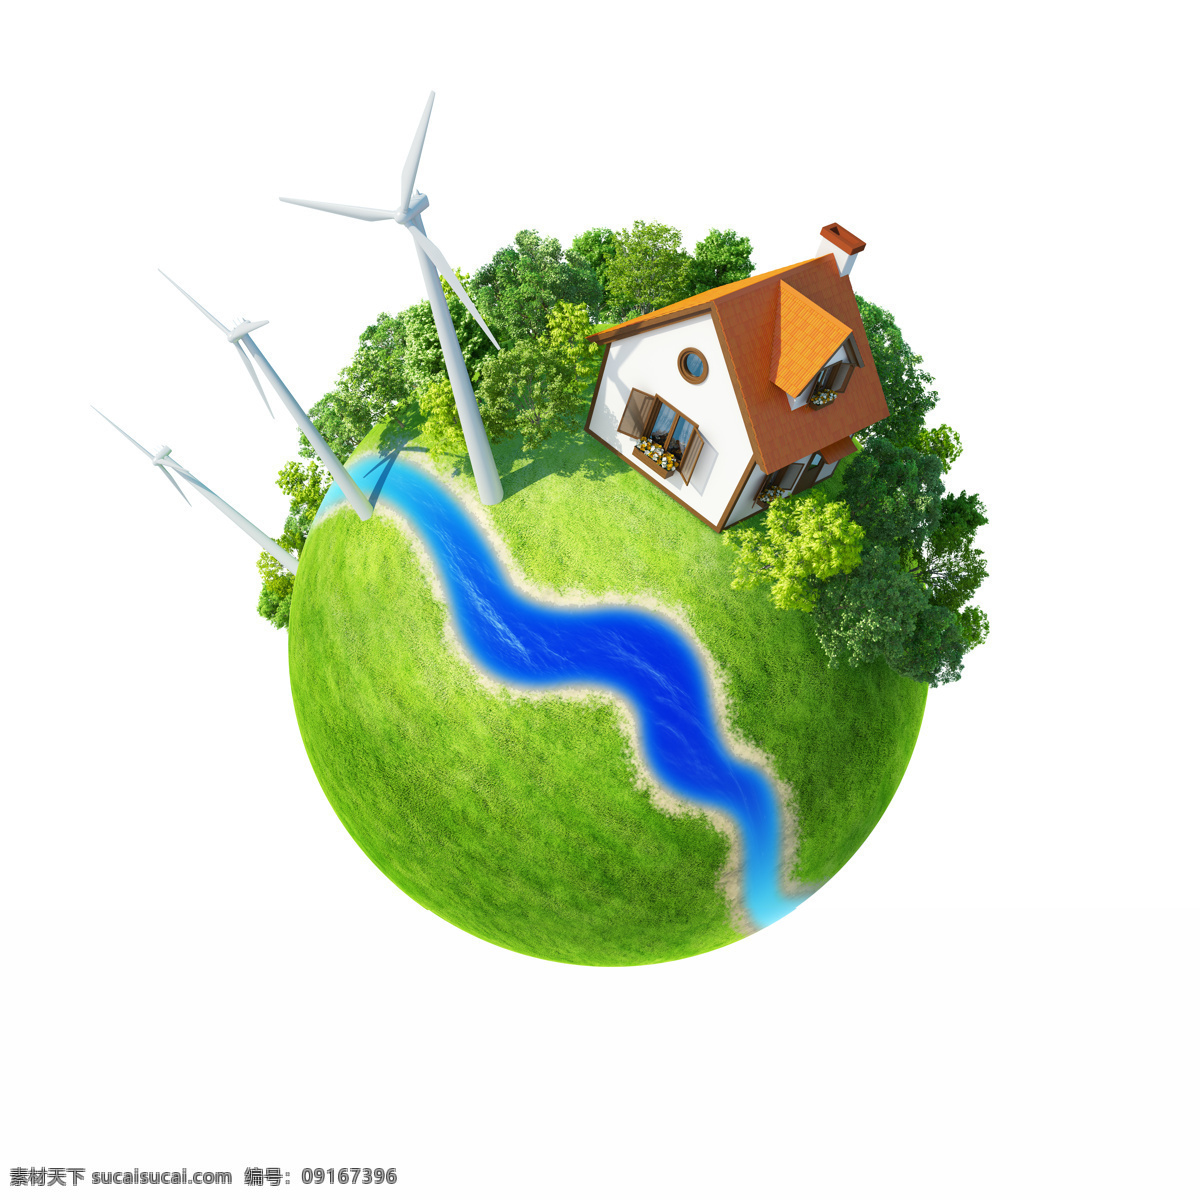 草地 创意地球素材 地球环保图片 房子 风车 绿色草地 绿色地球 创意 绿色 地球 设计素材 模板下载 树木 风力发电车 河道 环保 低 碳 psd源文件